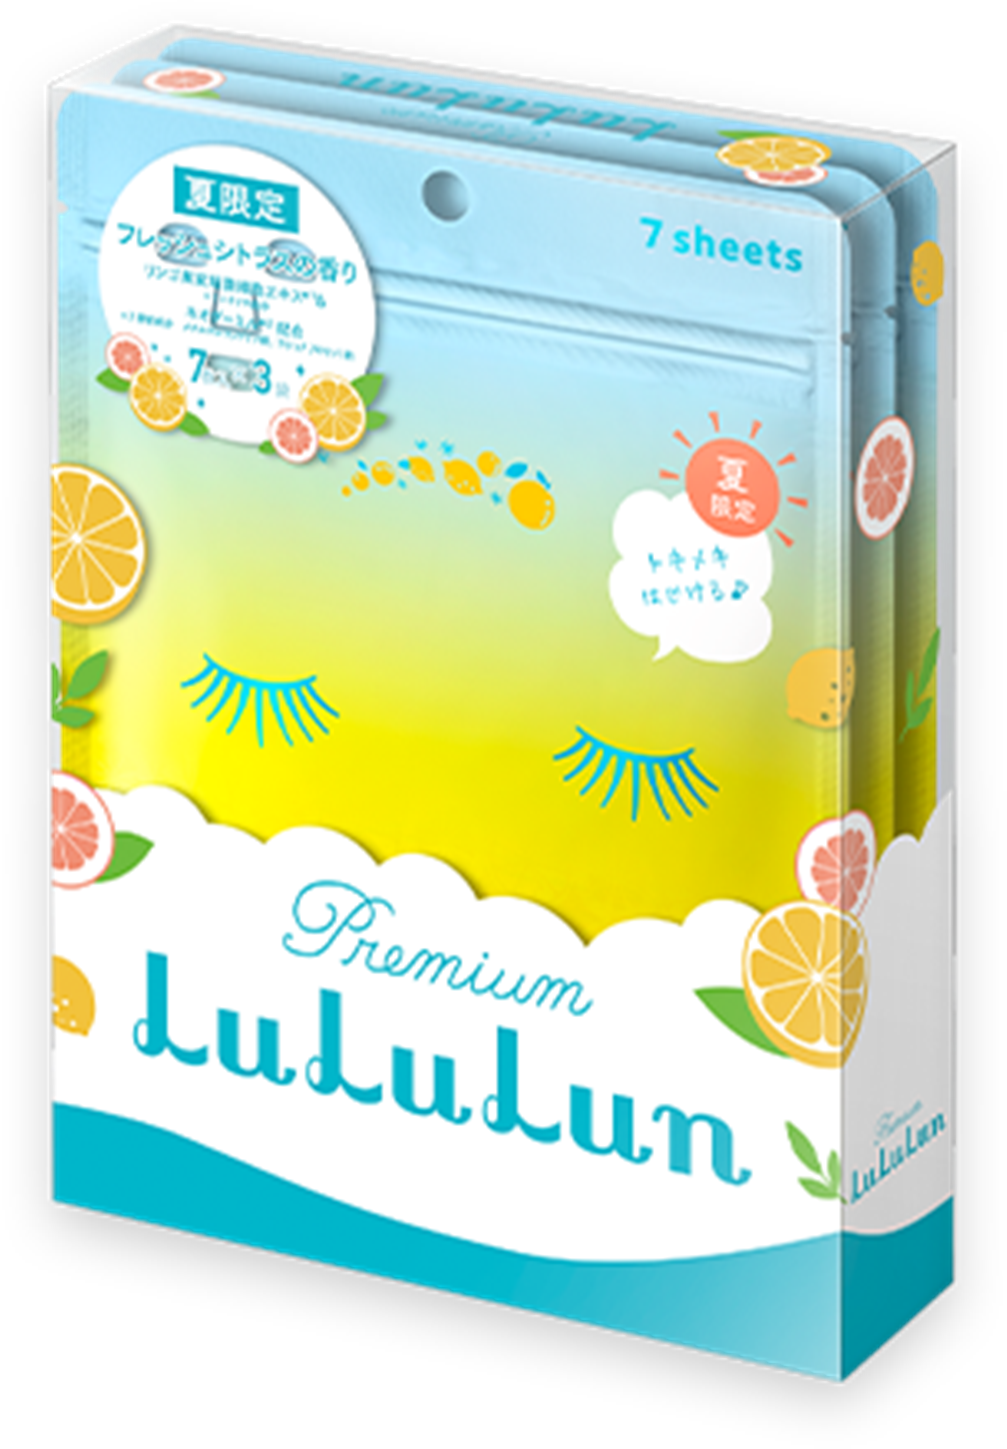 2019 Limited Edition Premium LuLuLun (Fresh Citrus Scent) seharga 1.200 yen per kotak (tidak termasuk pajak) isi 3 bungkus yang masing-masing berisi 7 lembar masker. 